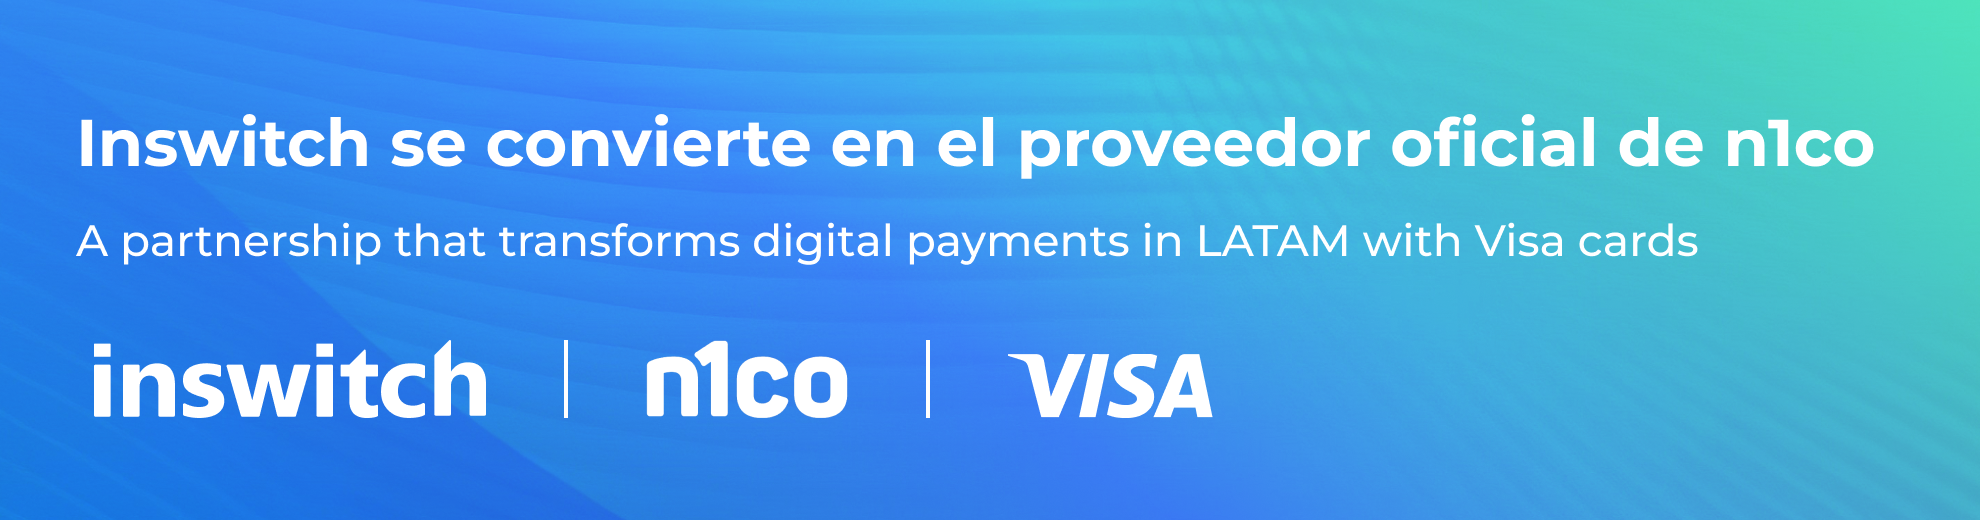 Inswitch se convierte en el proveedor oficial de n1co, fintech que transforma los pagos digitales en América Latina con tarjetas VISA.